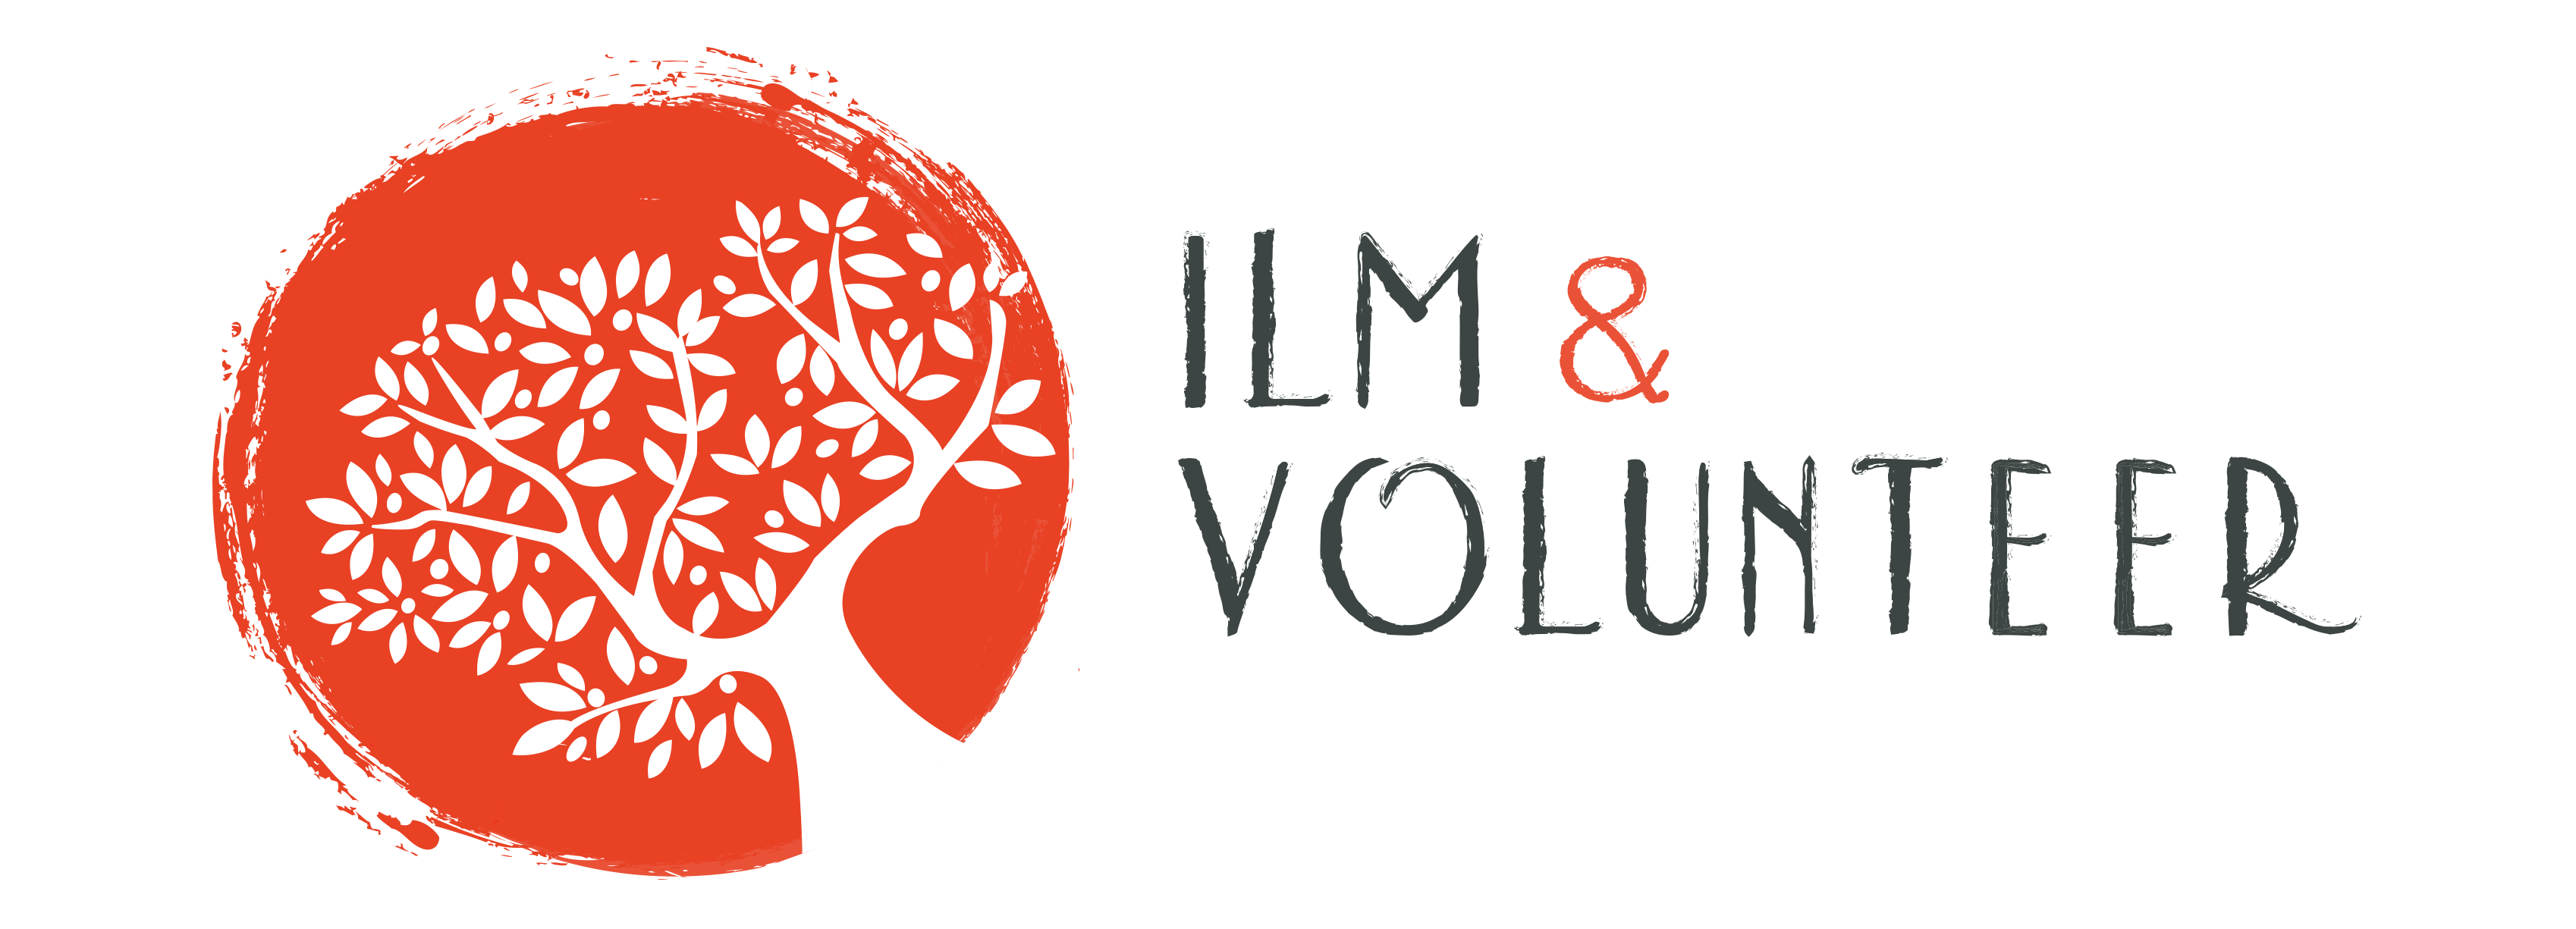 ILM Logo - ILM & VOLUNTEER